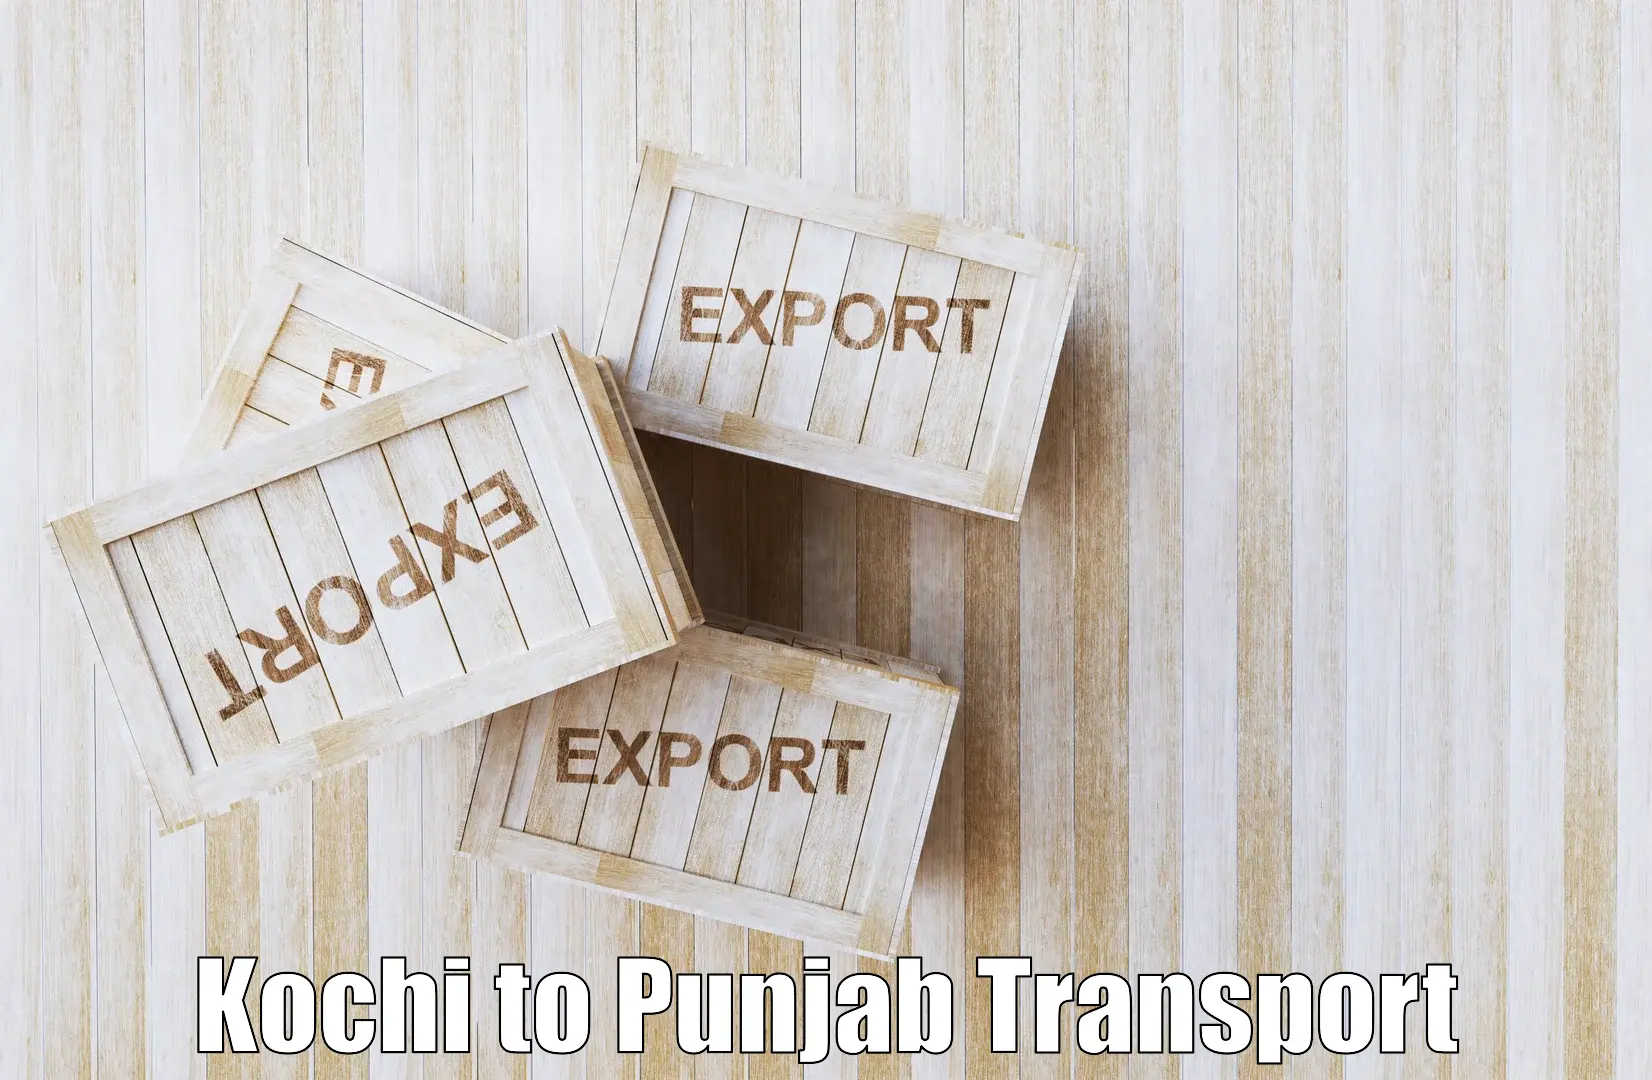 Online transport Kochi to Punjab